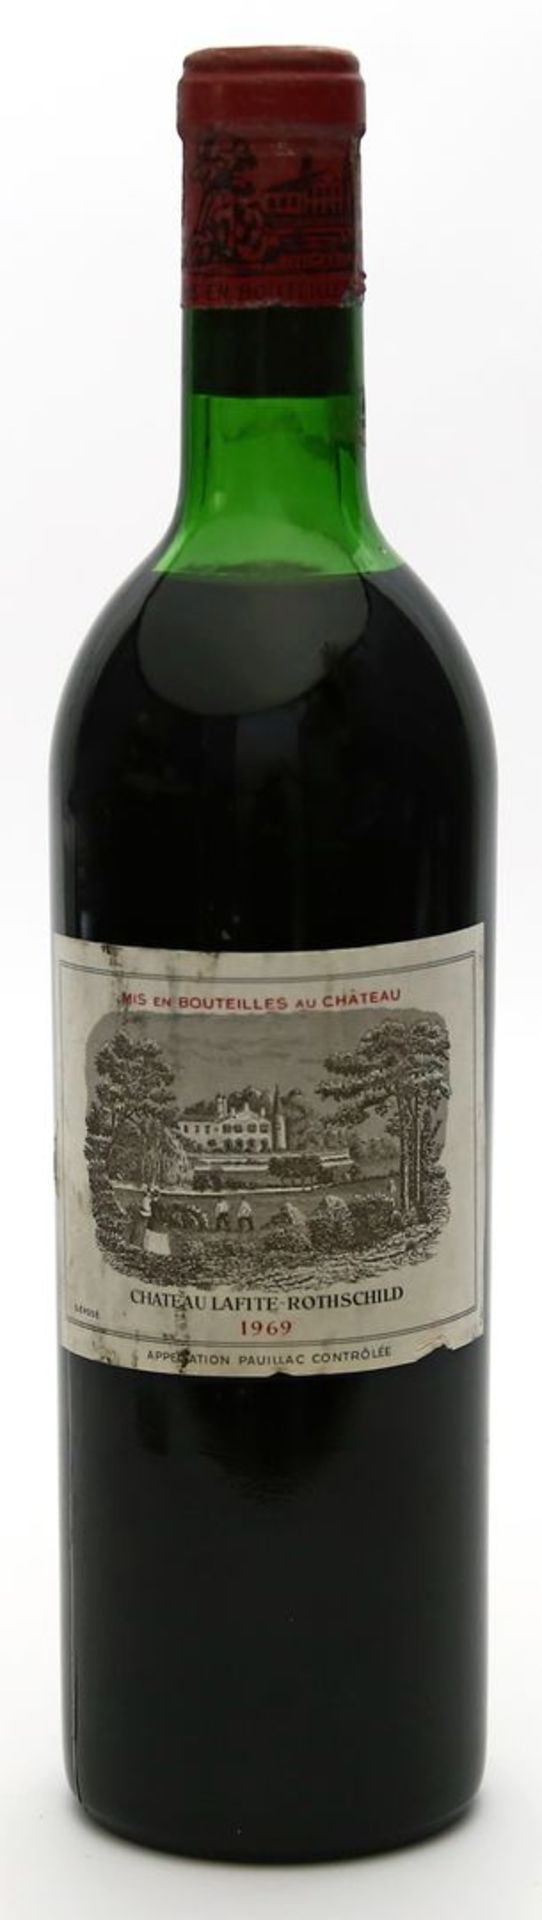 Flasche "Chateau Lafite-Rothschild", 1969.